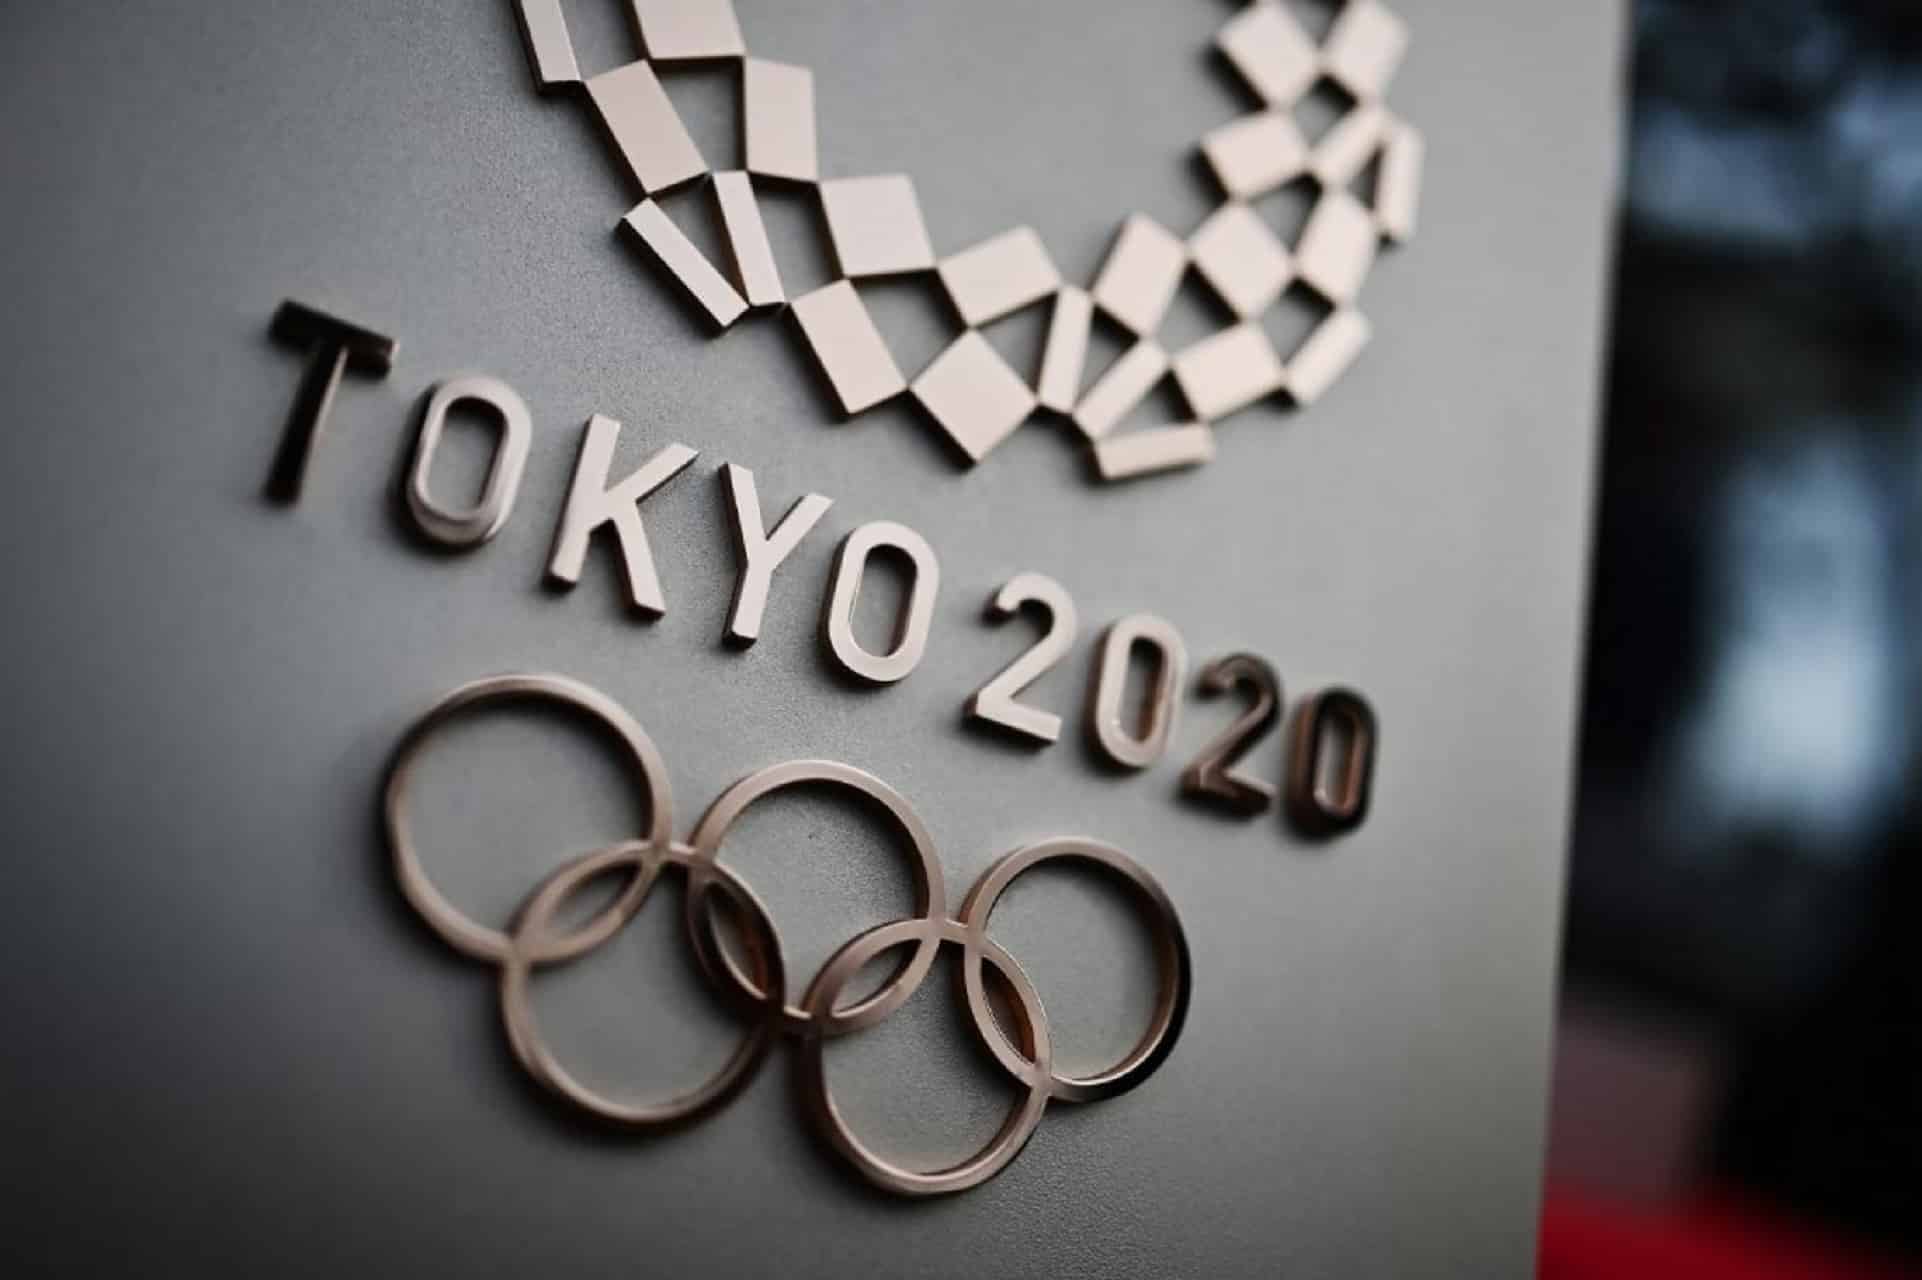 أولمبياد طوكيو 2020 في طريقه للتأجيل